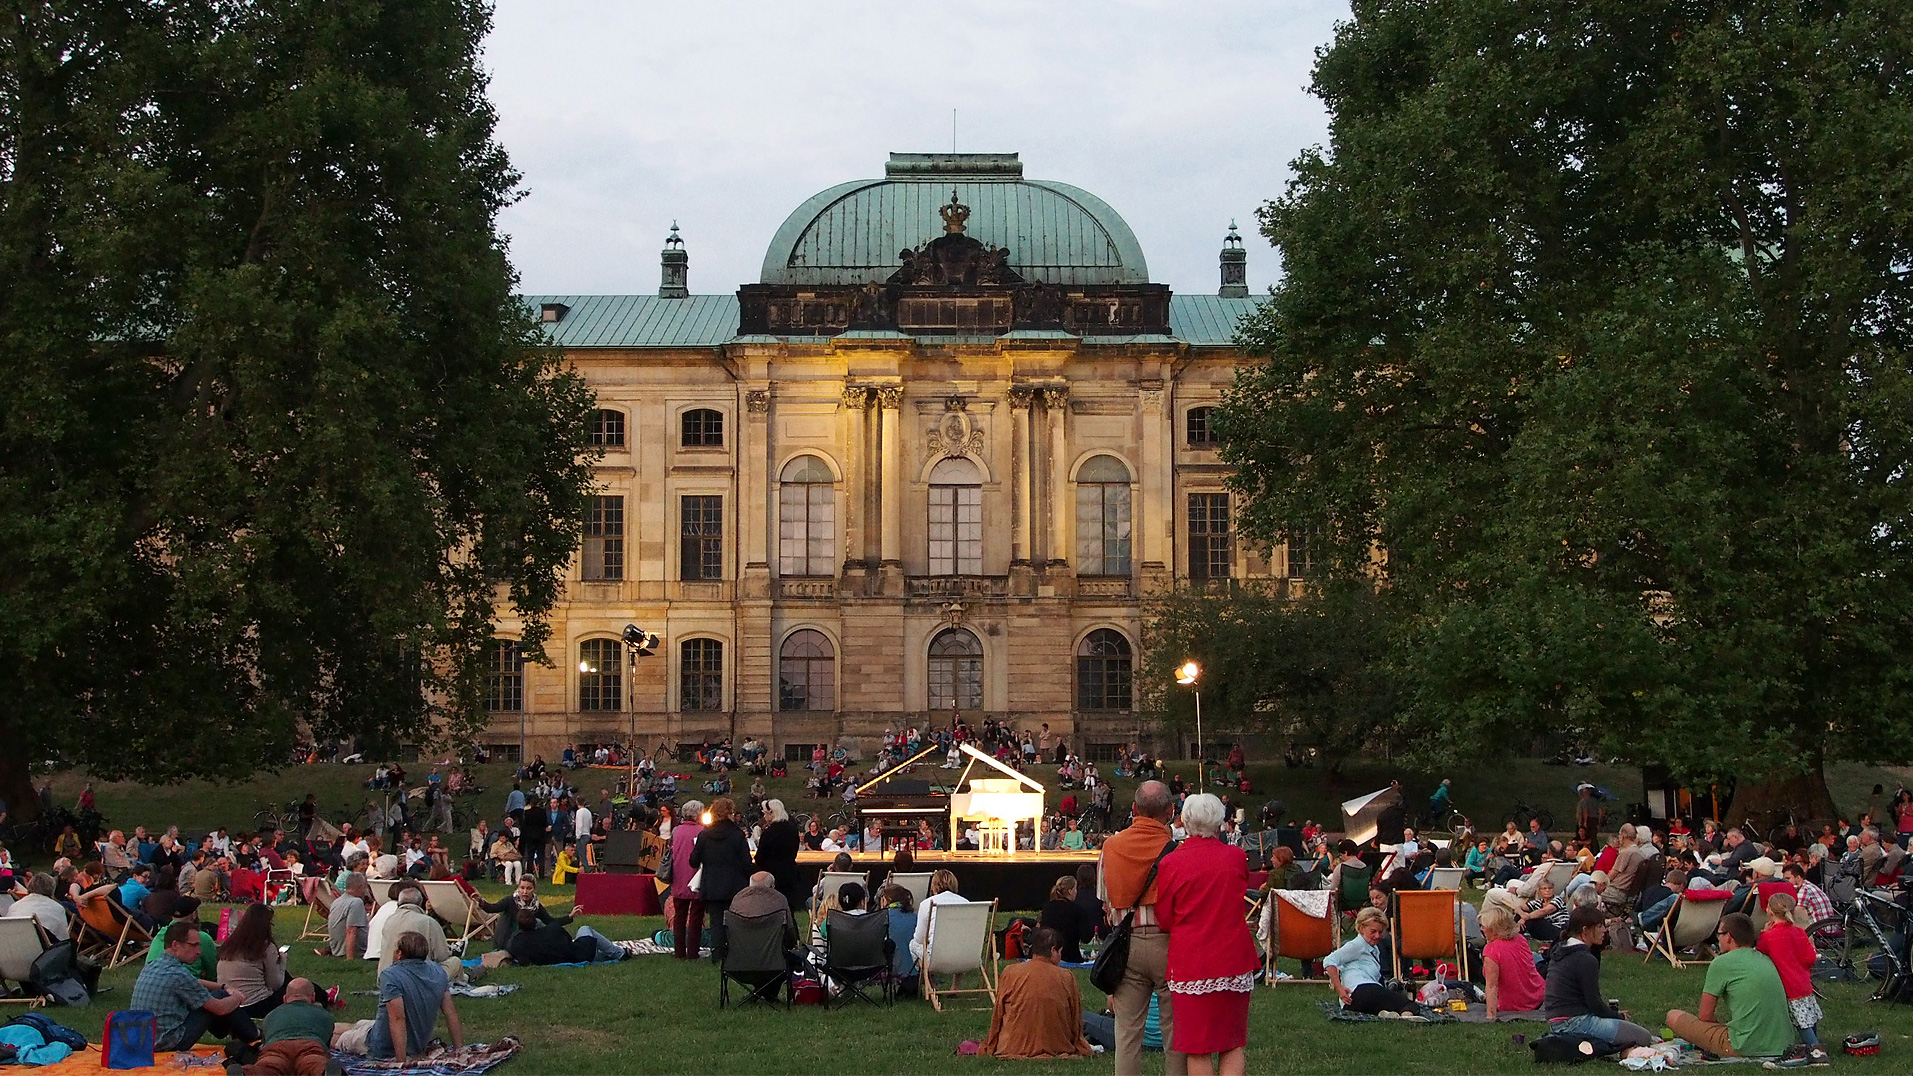 Palaissommer Dresden